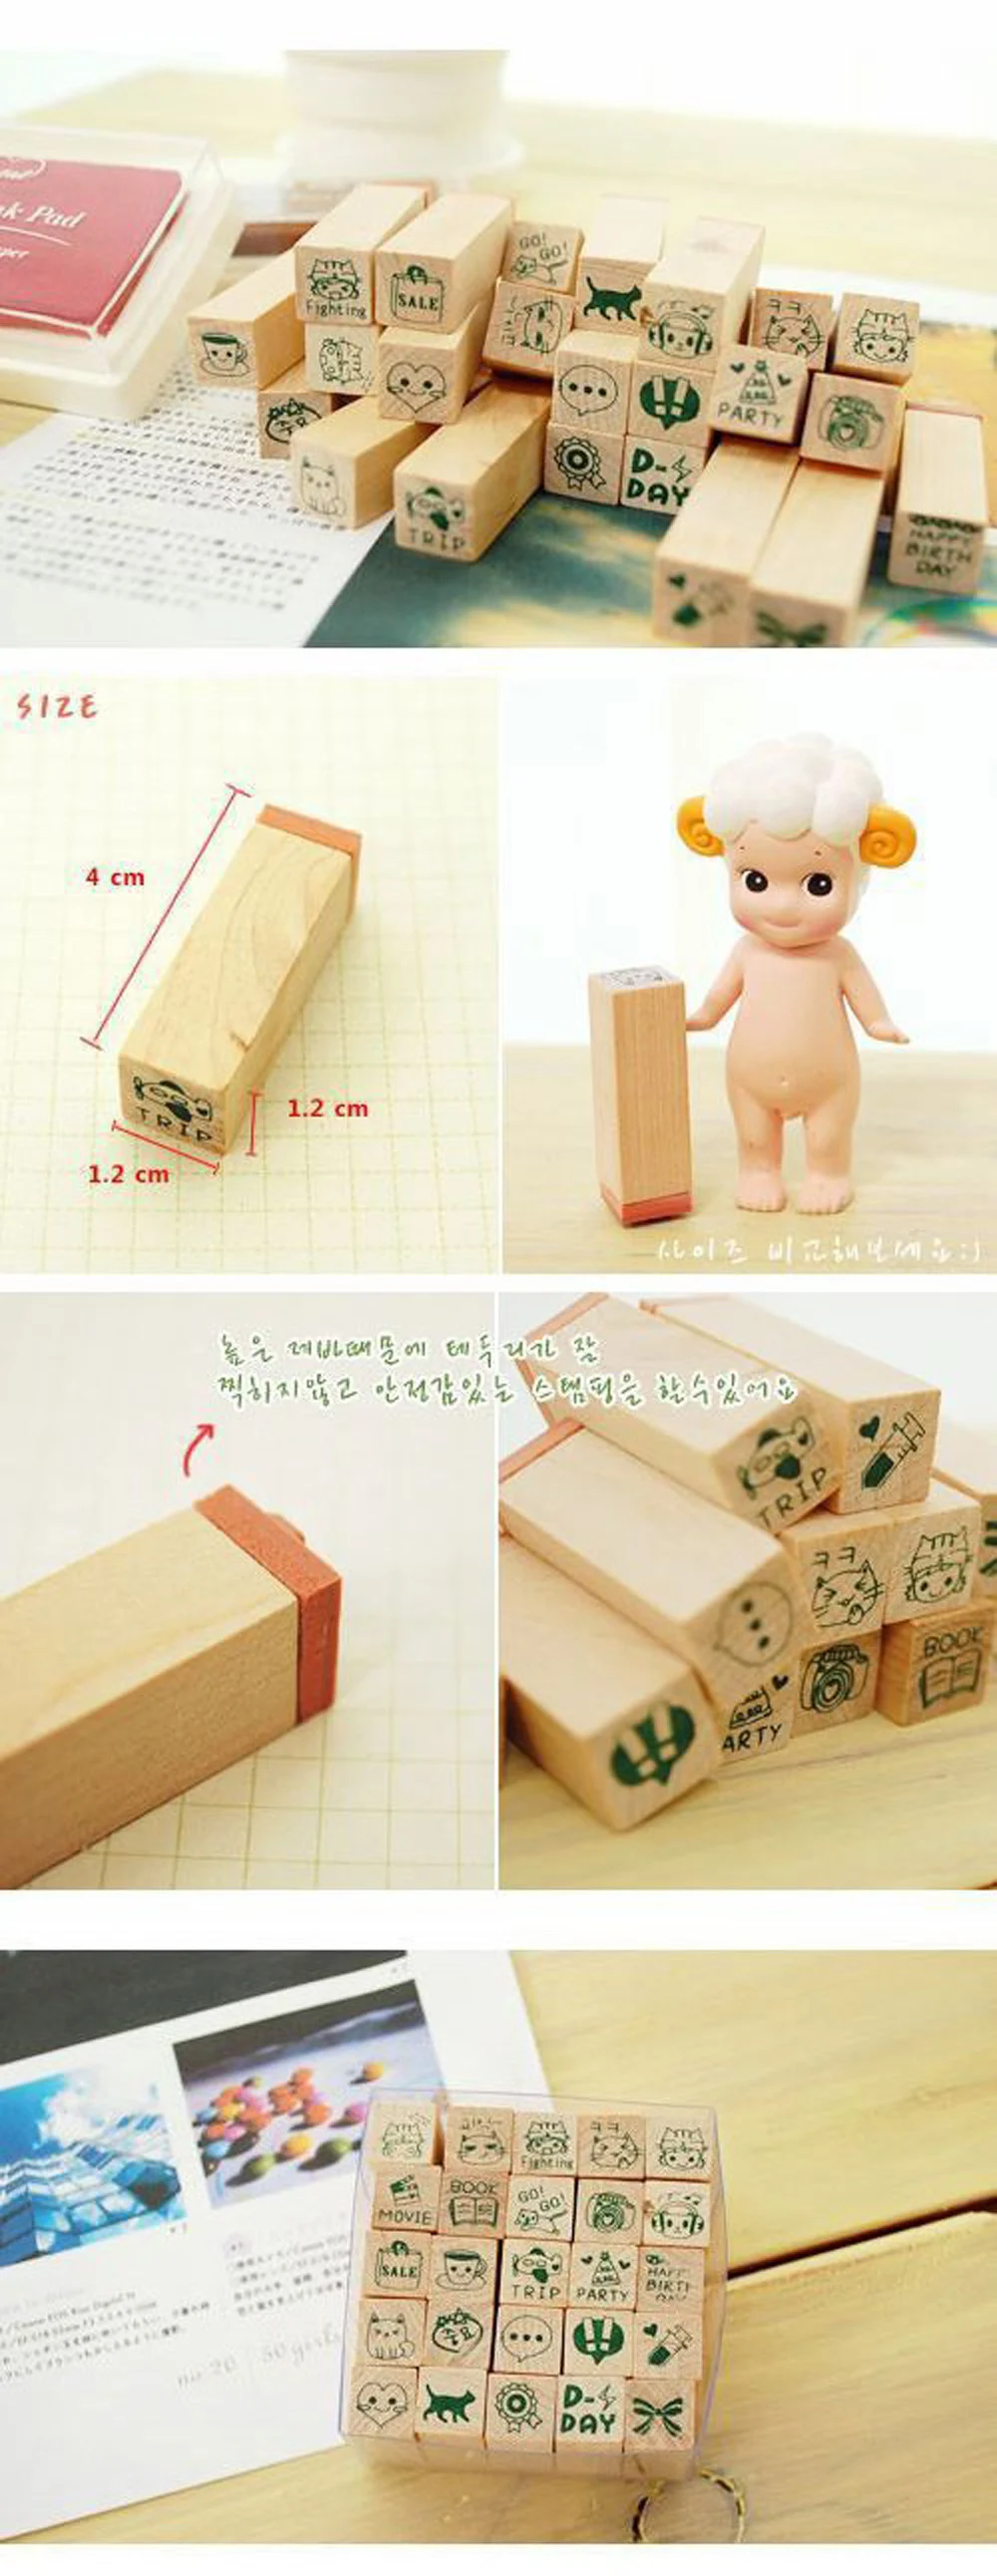 25 шт/лот Корея счастливой жизни DIY деревянная коробка печать канцелярский набор